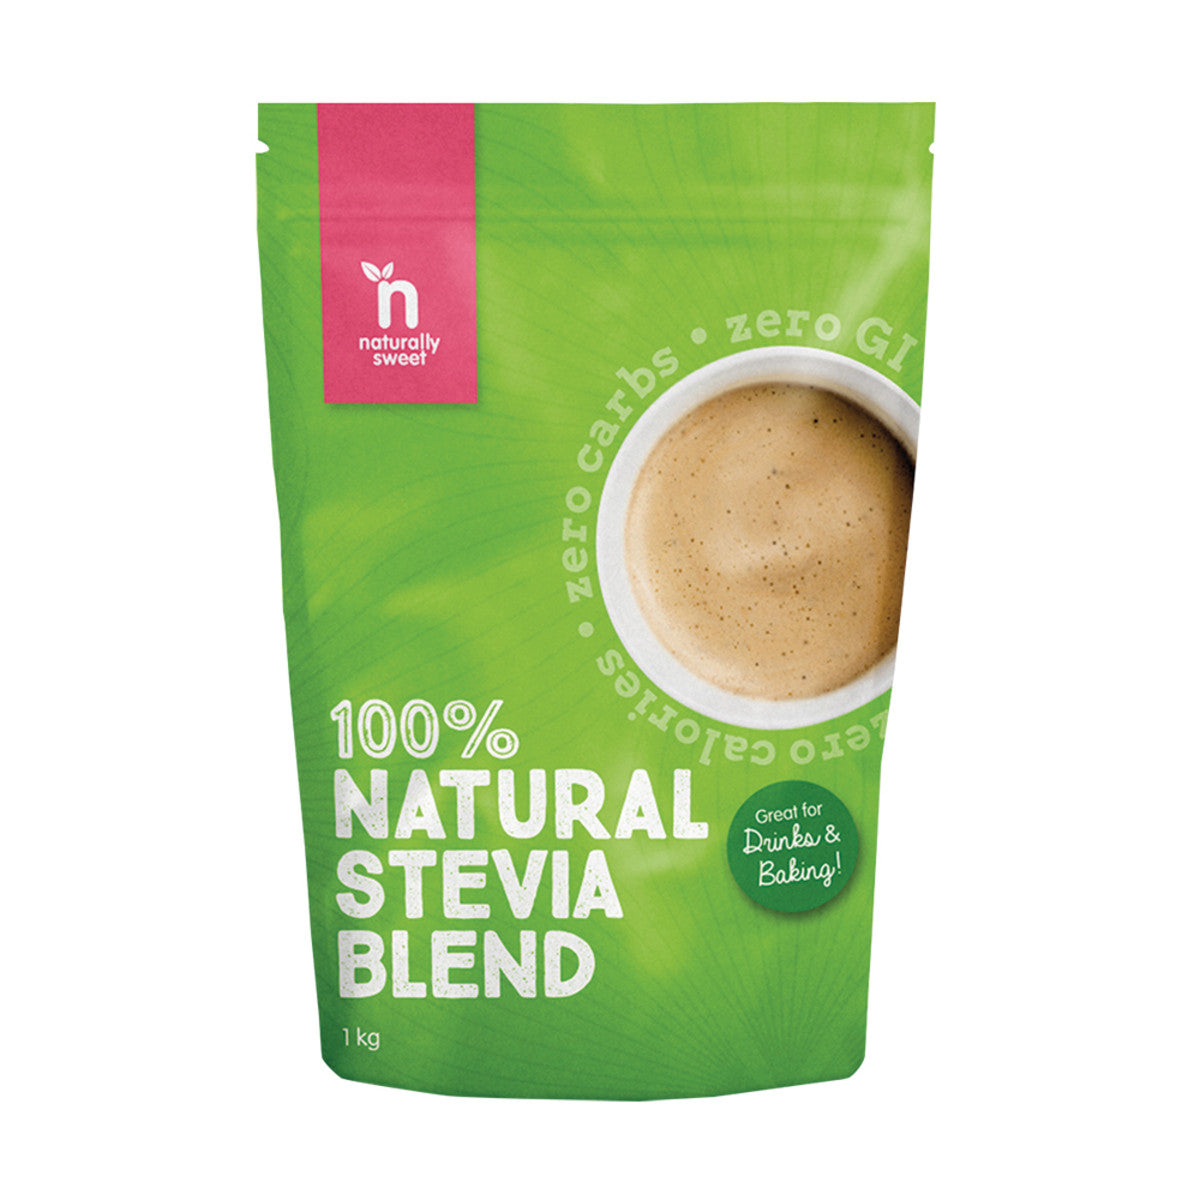 Naturally Sweet - 100% Natural Stevia Blend